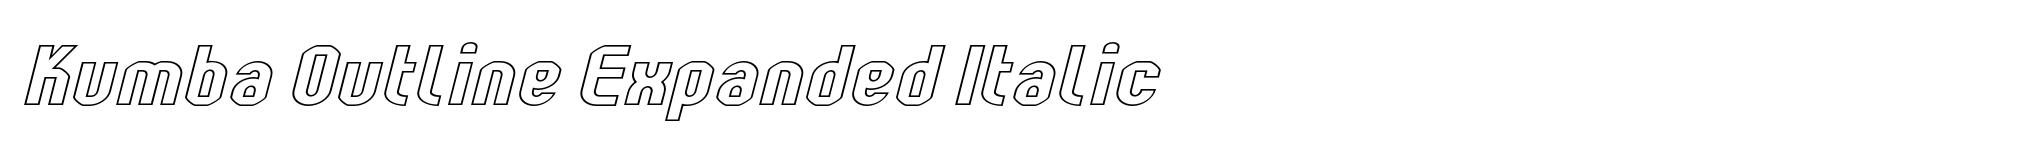 Kumba Outline Expanded Italic image